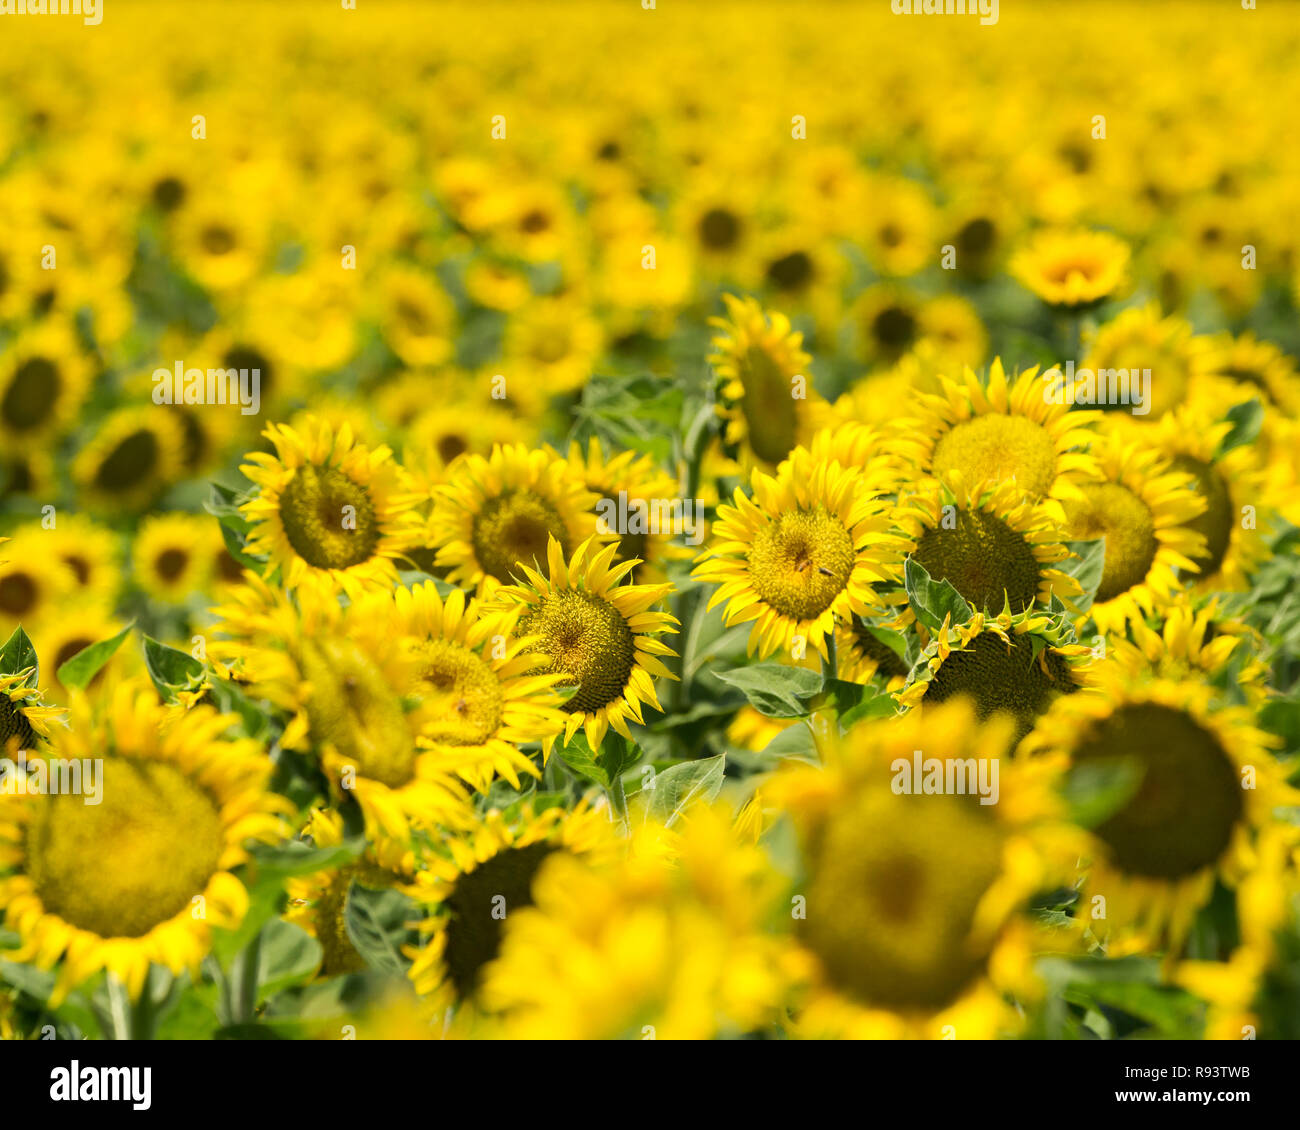 Sonniges Gemüt - Sonnenblumen Feld leuchtet Gelb glücklich, so weit das Auge sehen kann. Yolo County, Kalifornien, USA Stockfoto